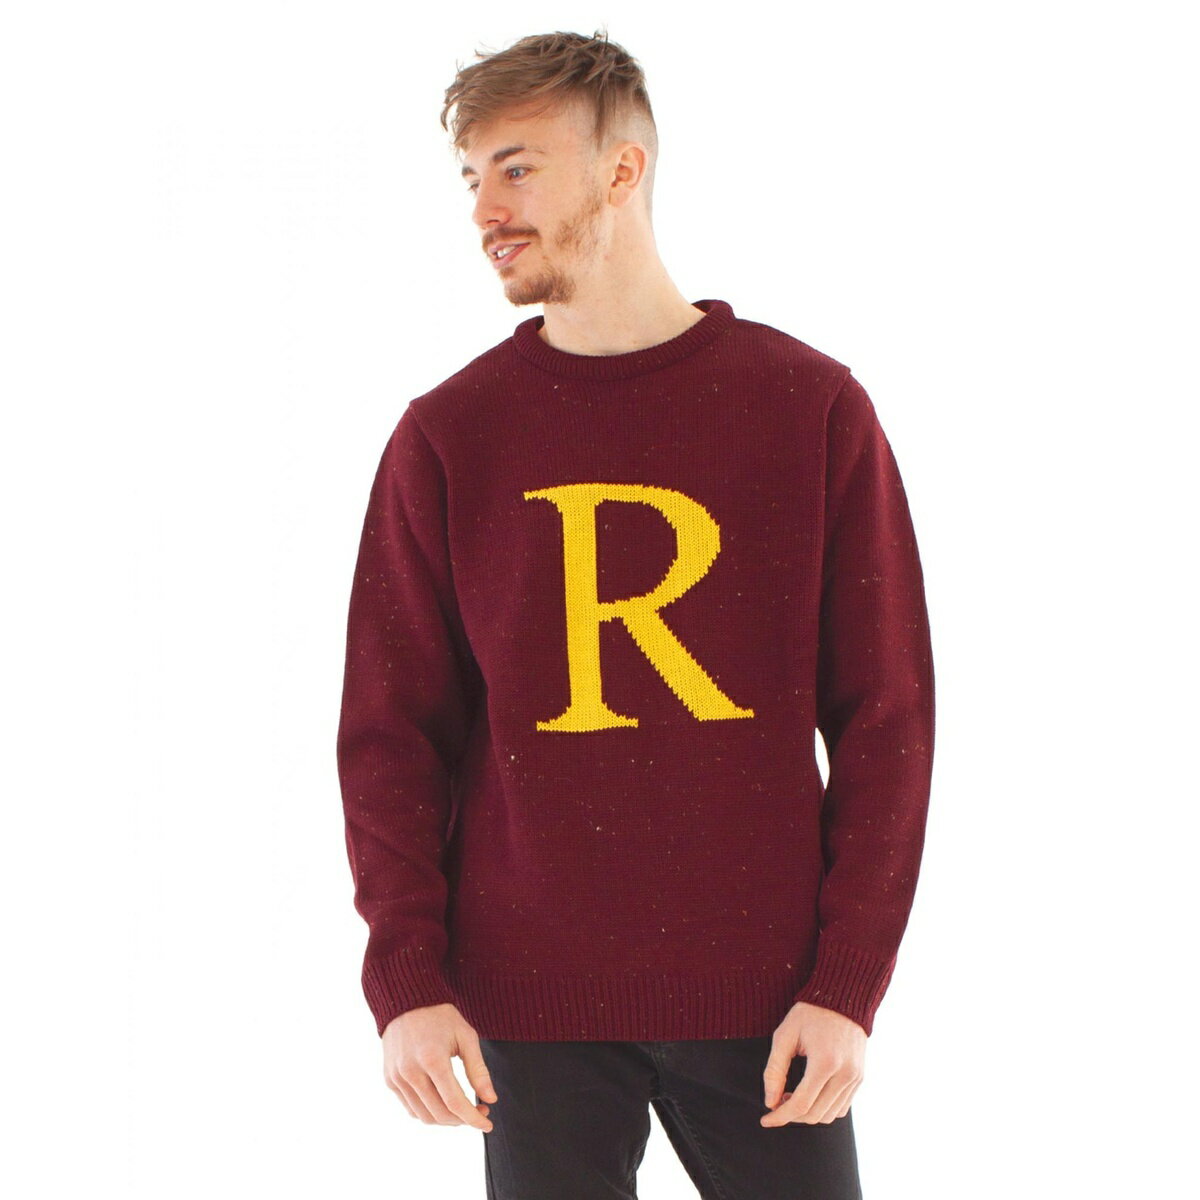 (ハリー ポッター) Harry Potter オフィシャル商品 Ron Weasley R ニットクリスマス セーター トップス 【海外通販】